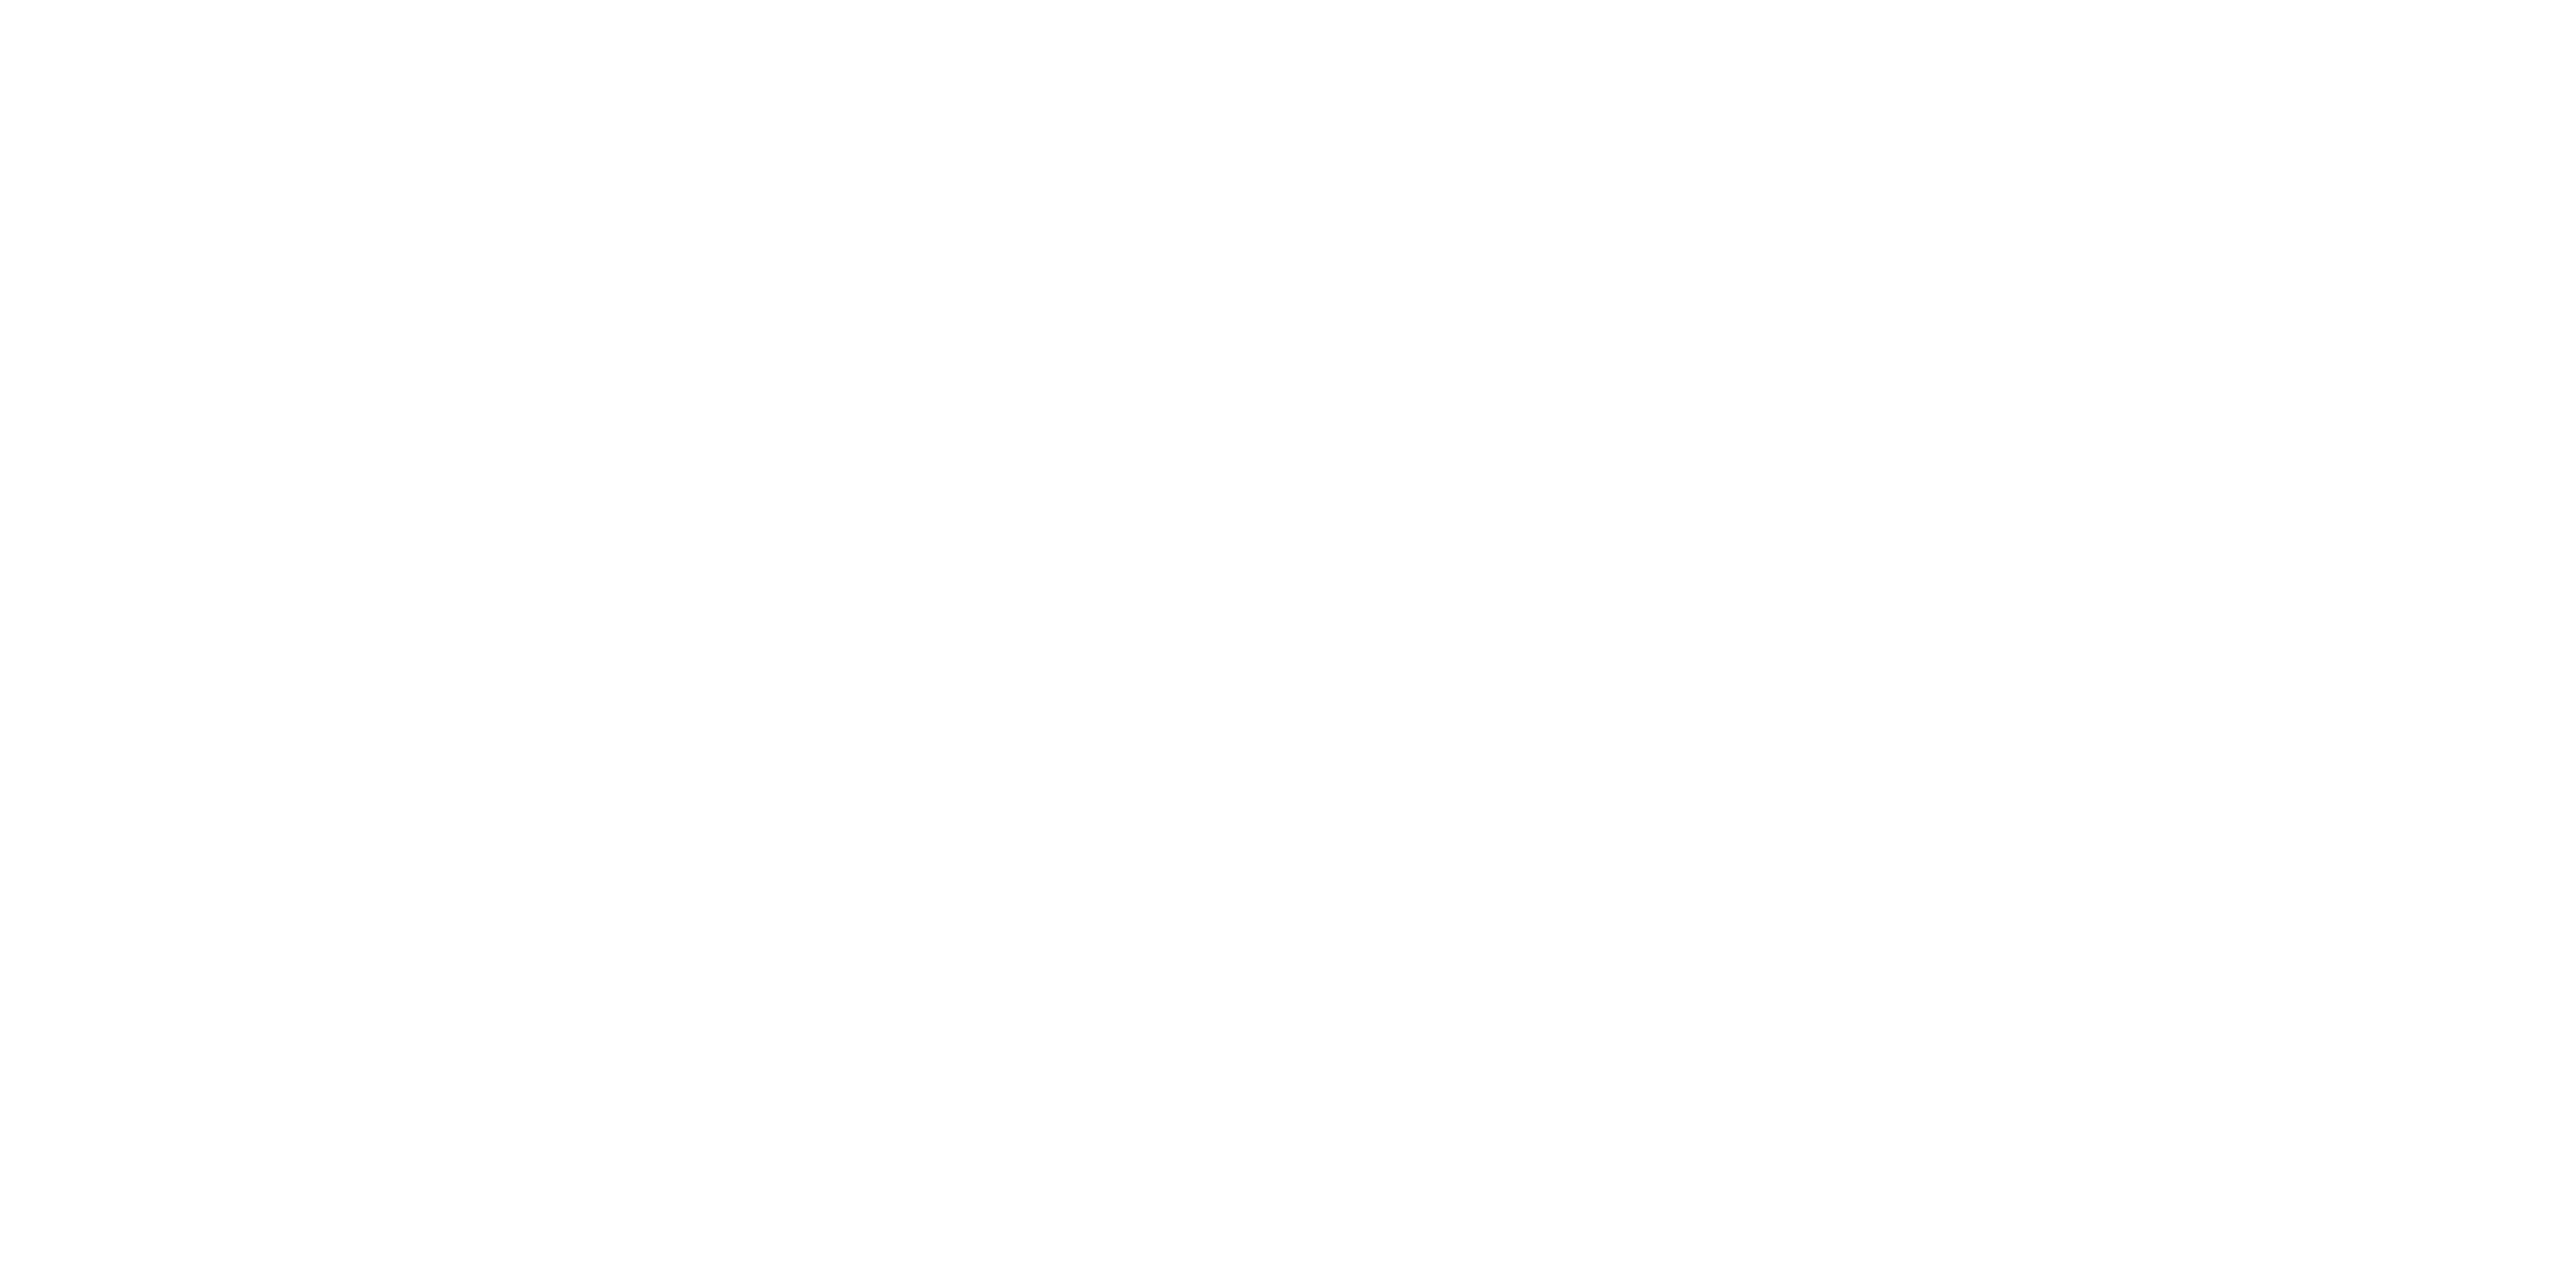 23 Restaurant Services Logo